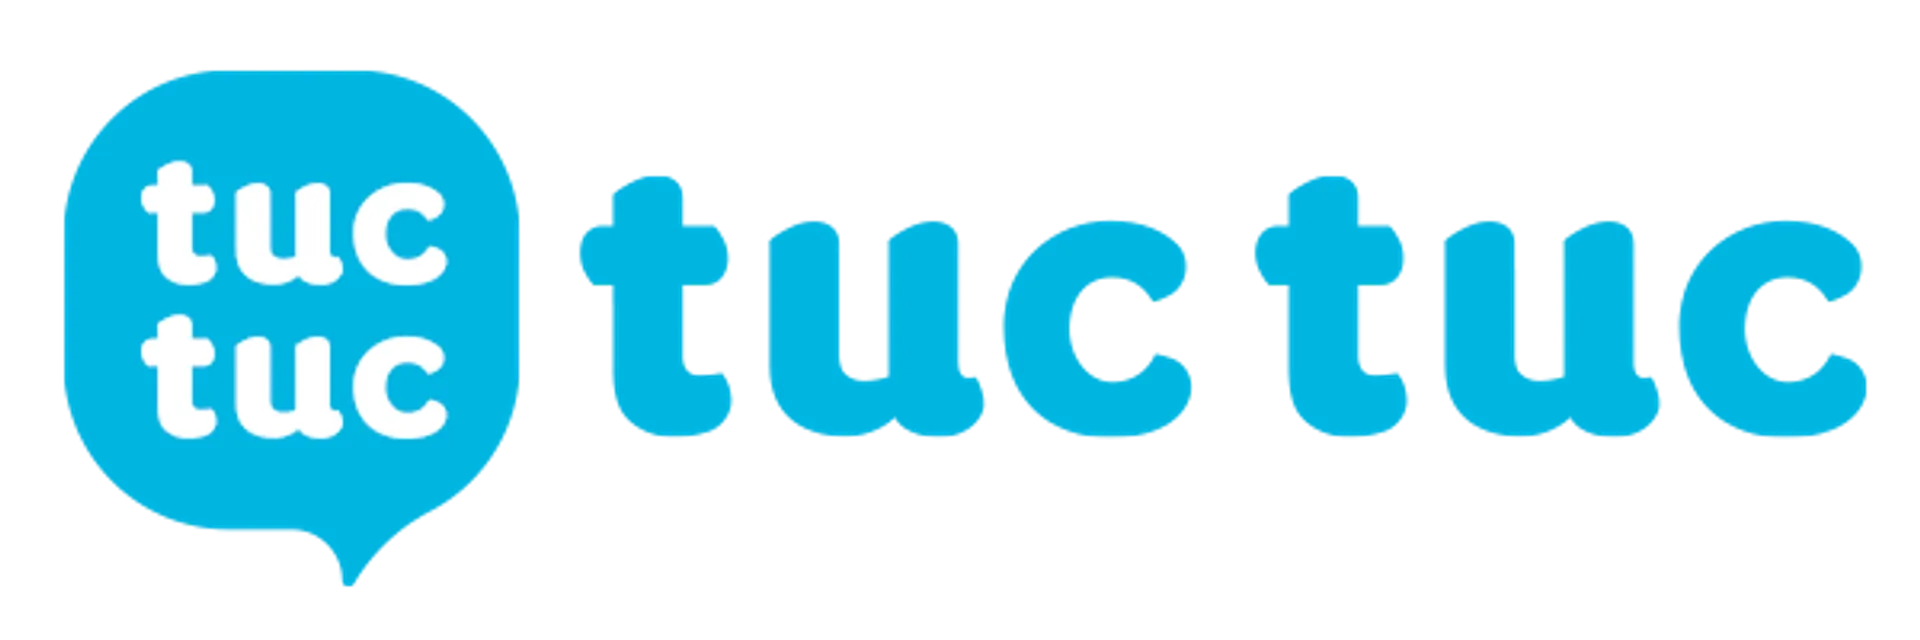 TUC TUC logo de catálogo